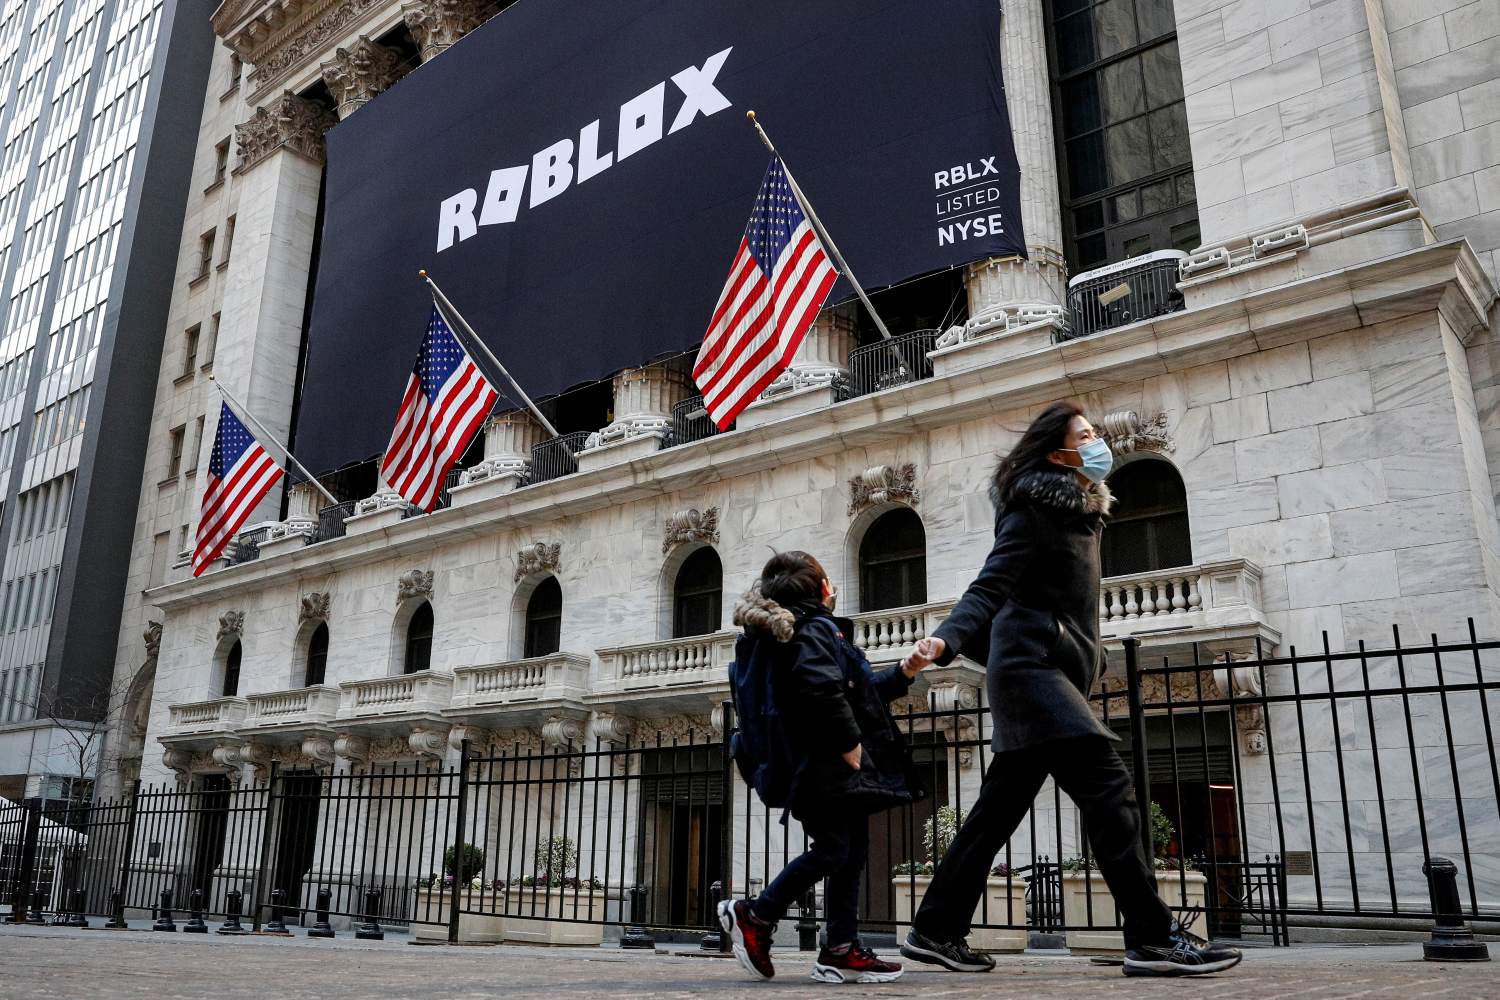 Roblox: plataforma de jogos sai do ar, mas empresa diz ter encontrado a  solução, Empresas